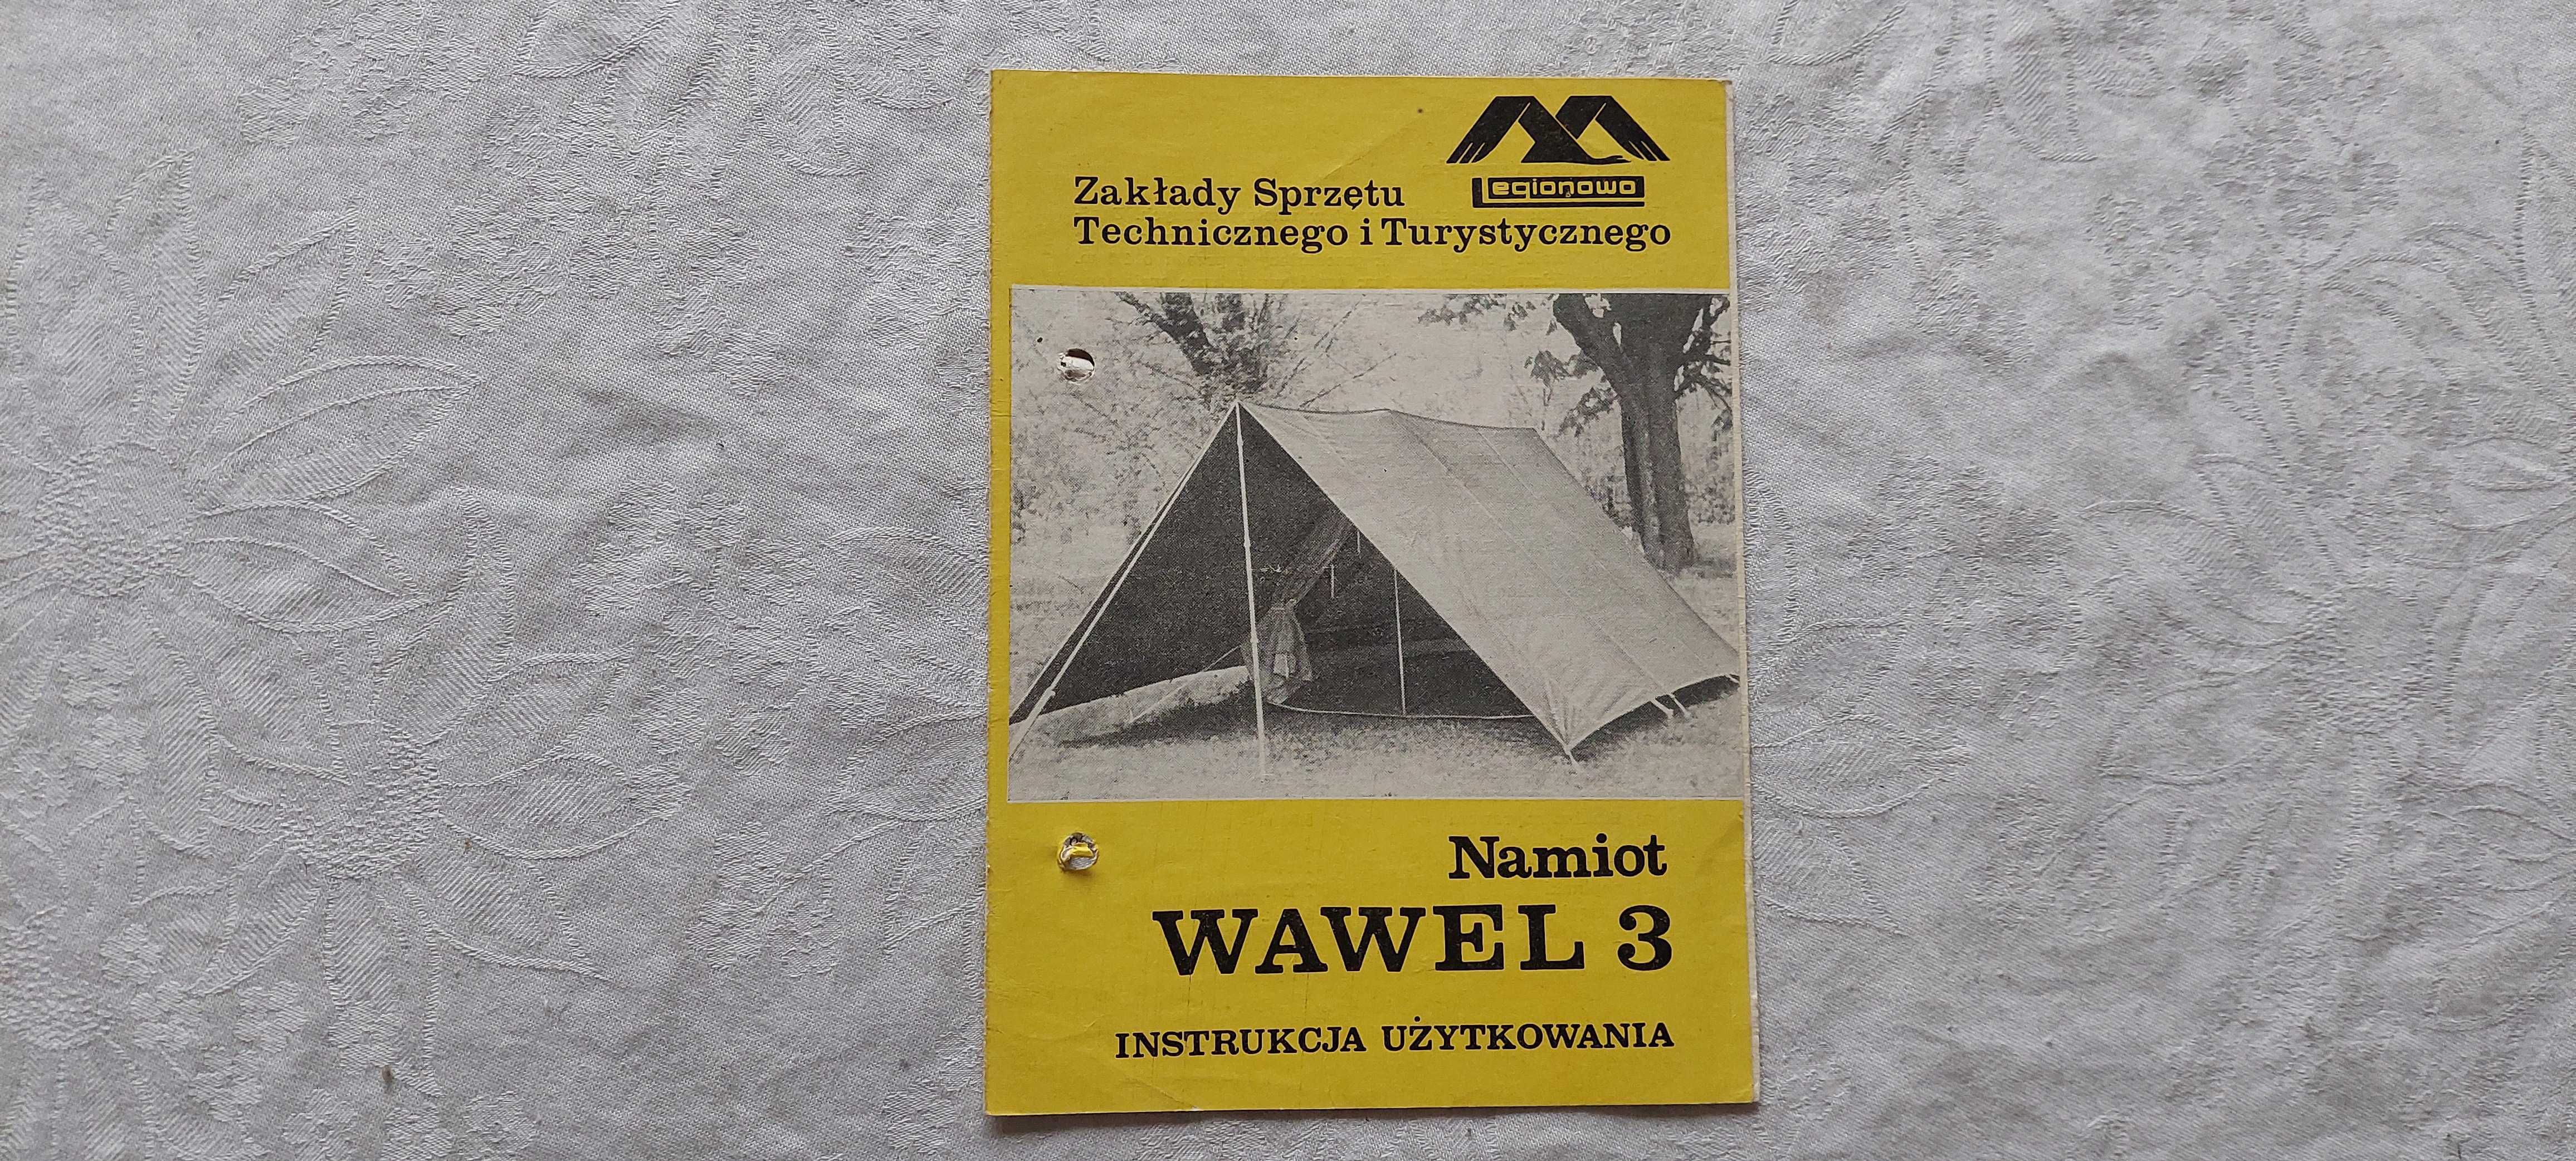 Instrukcja obsługi namiotu Wawel 3 (1969 r.)